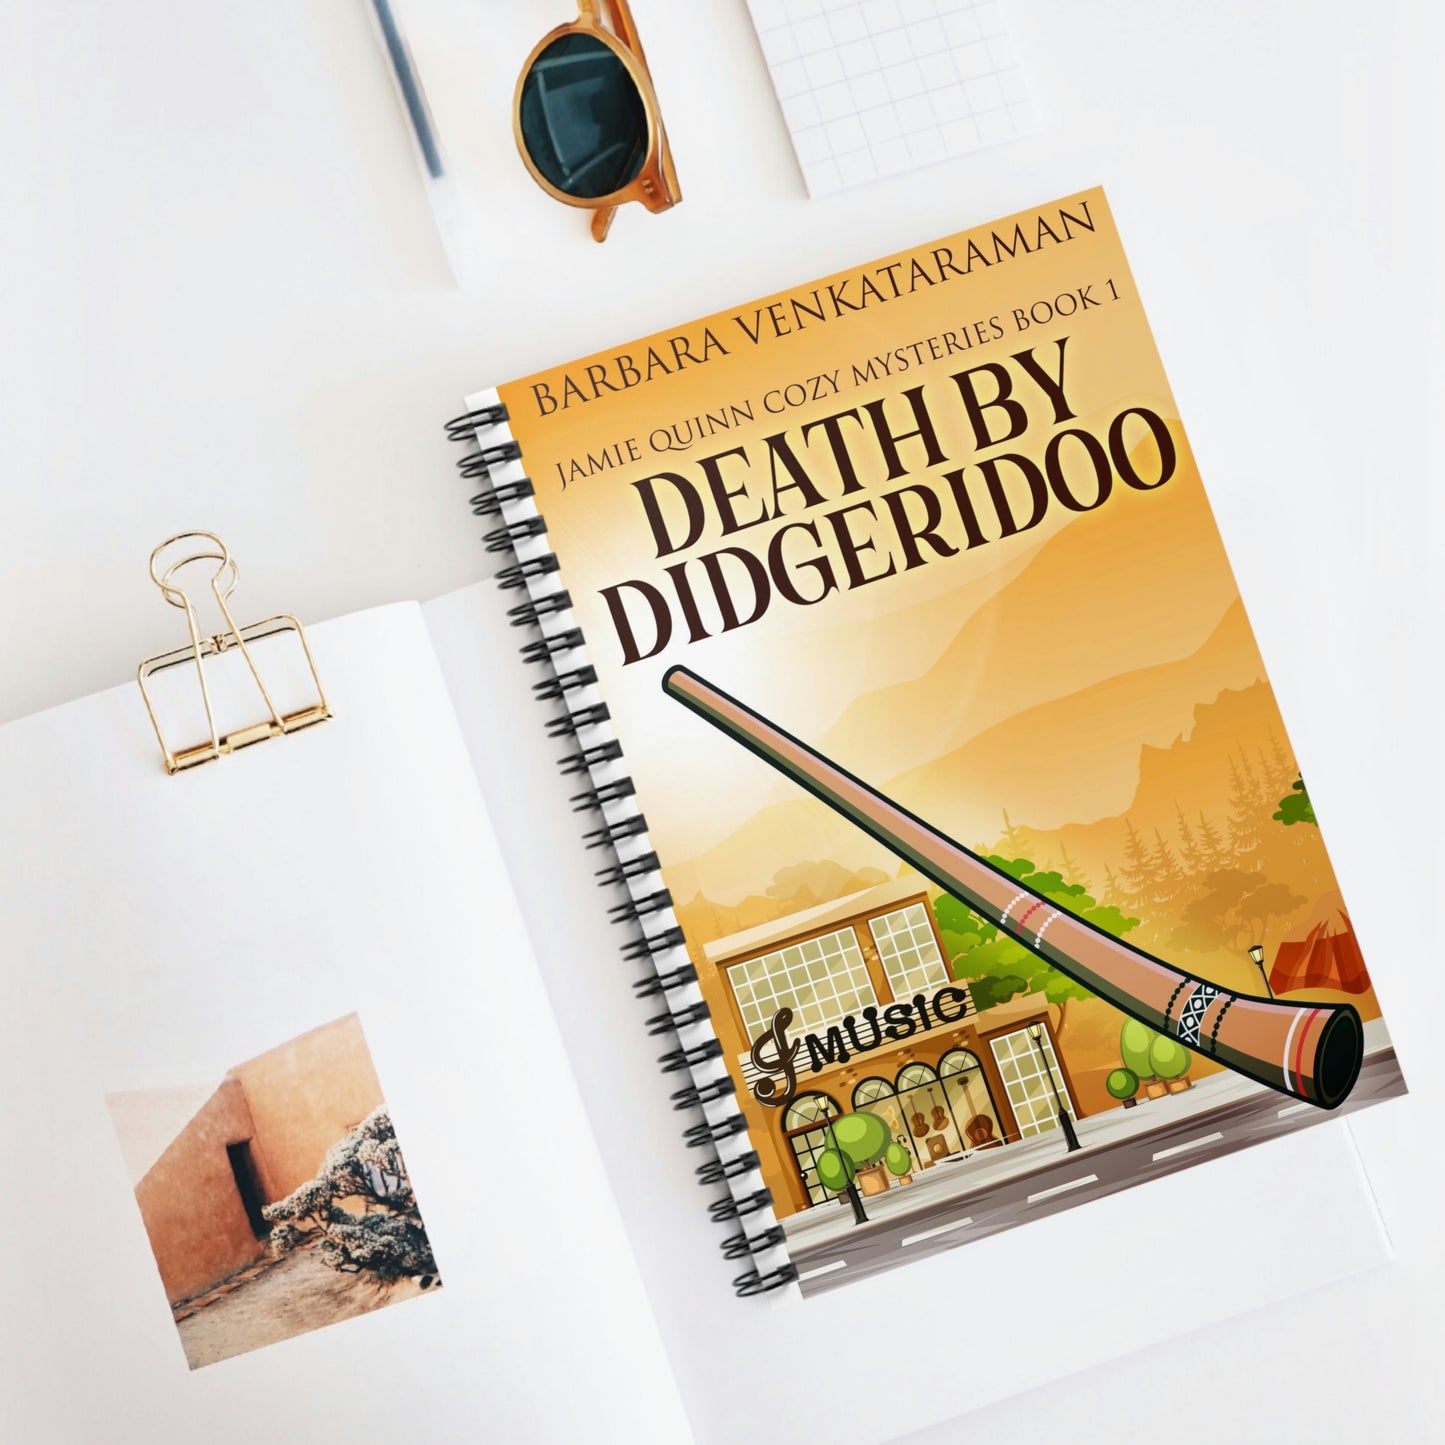 Death By Didgeridoo - Spiral Notebook